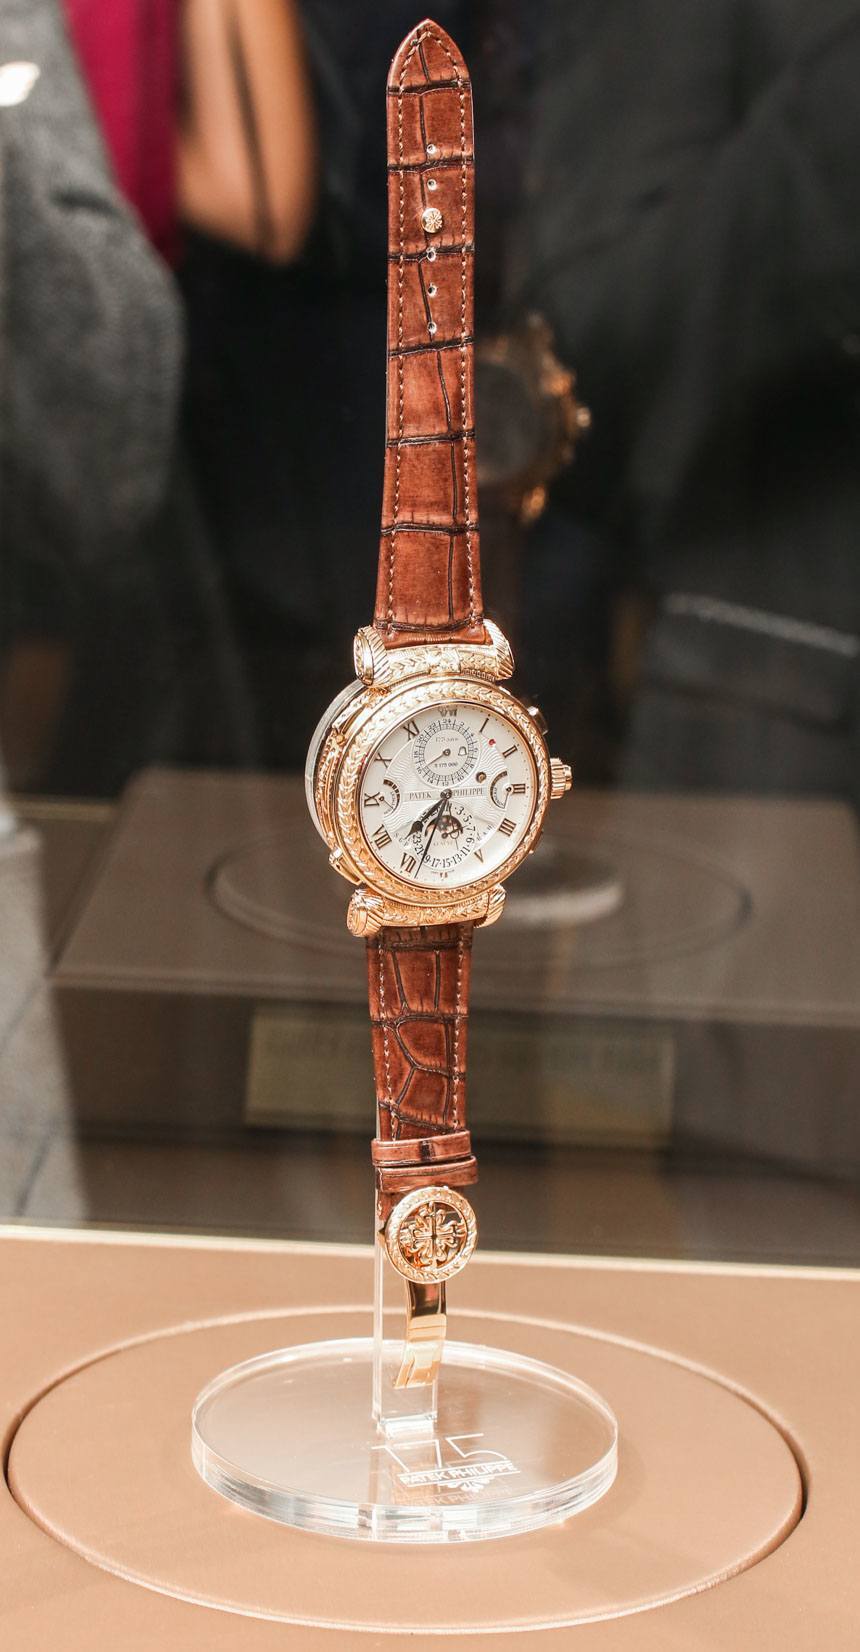 El reloj ,as caro del mundo expuesto en un museu.